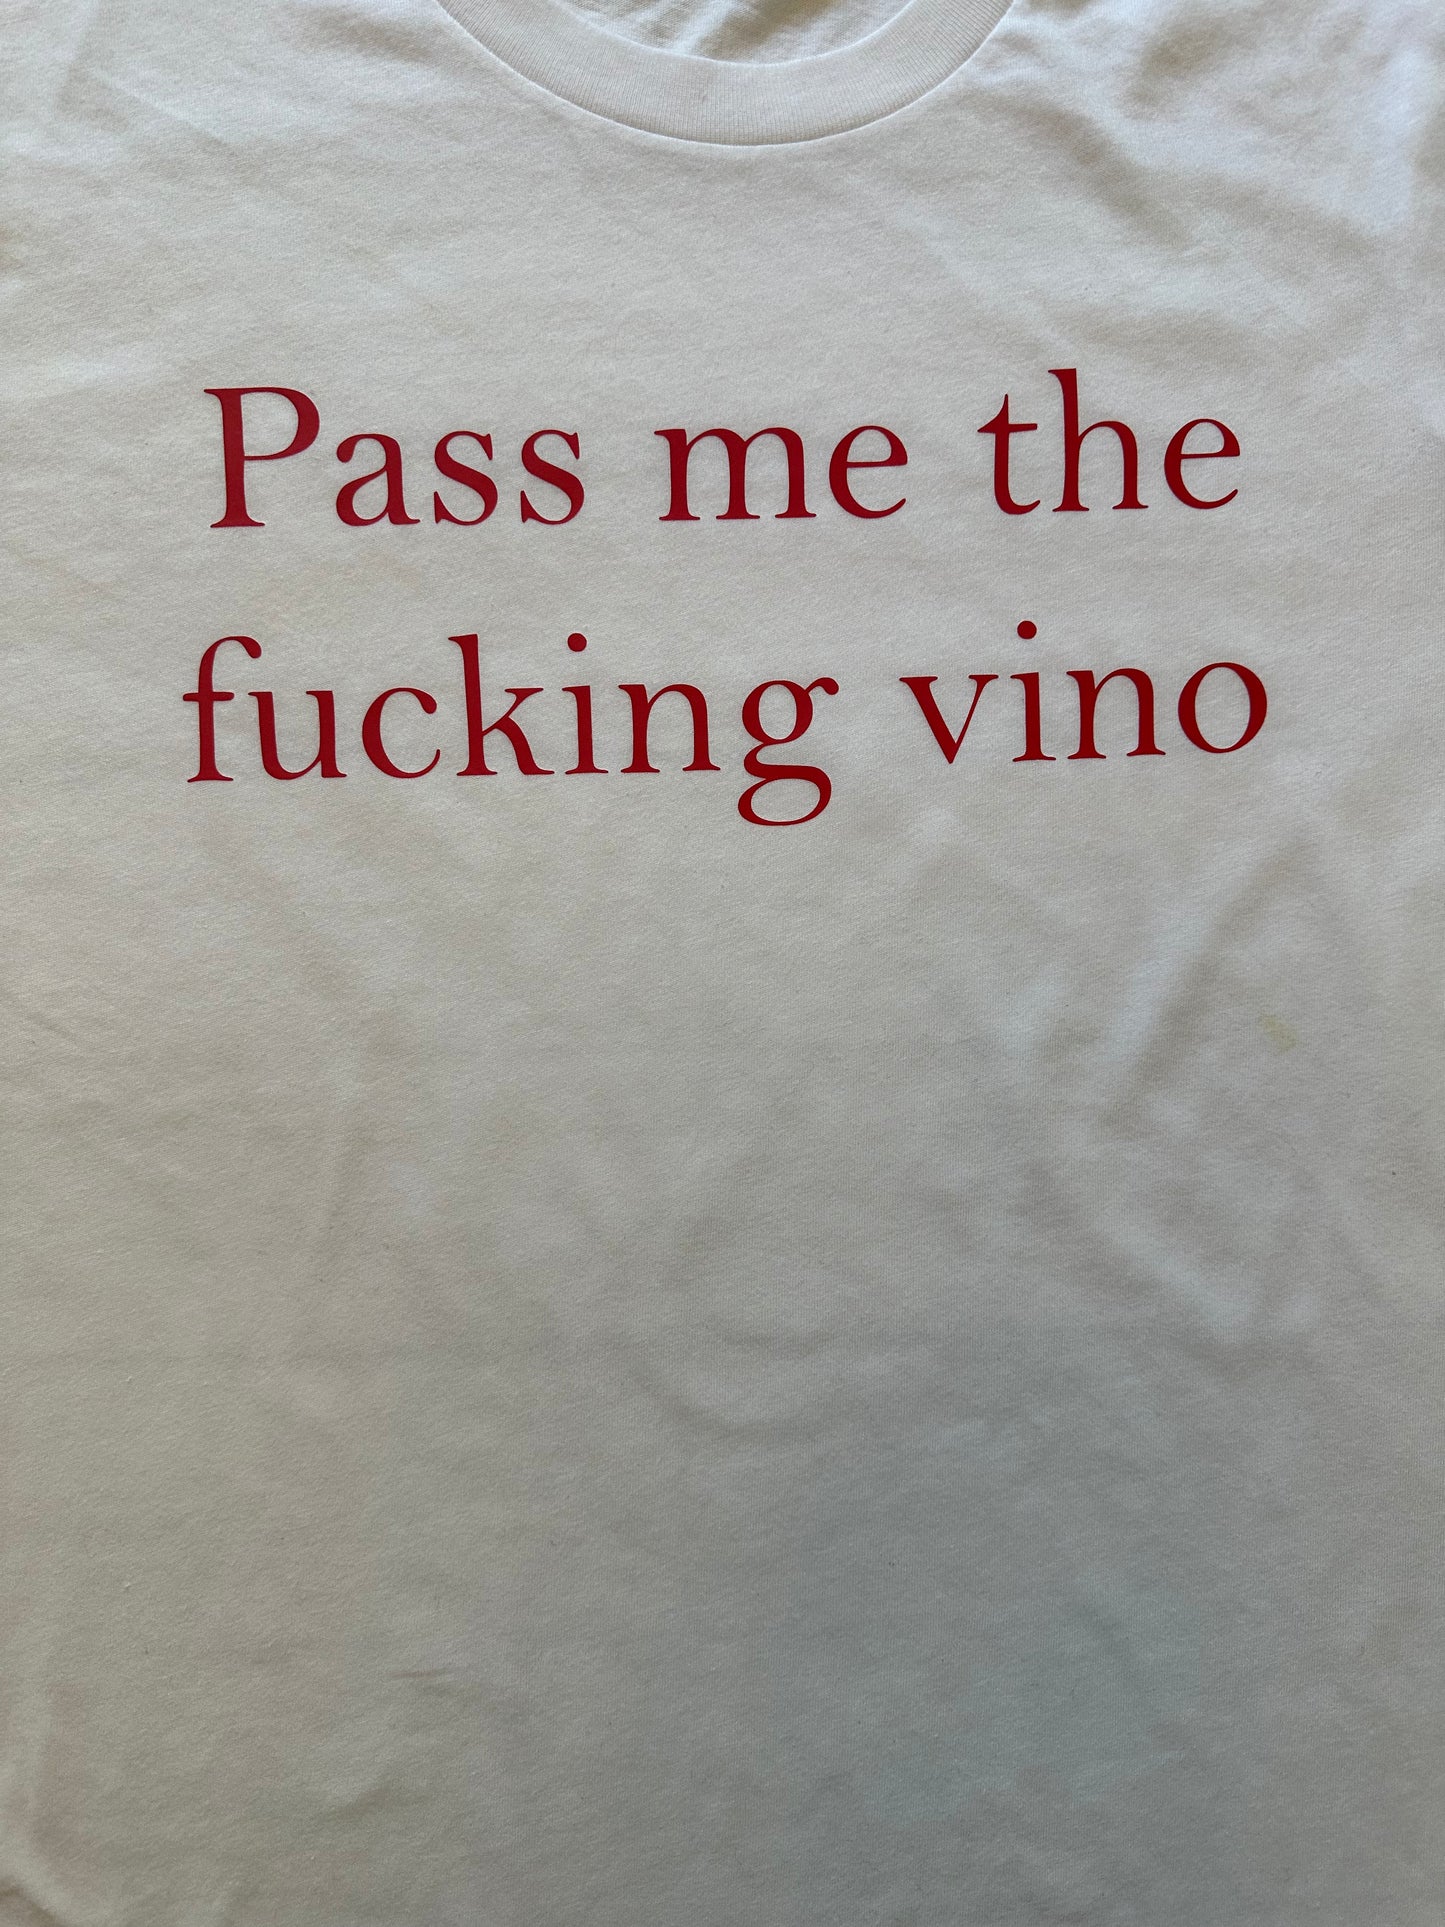 Pass the vino